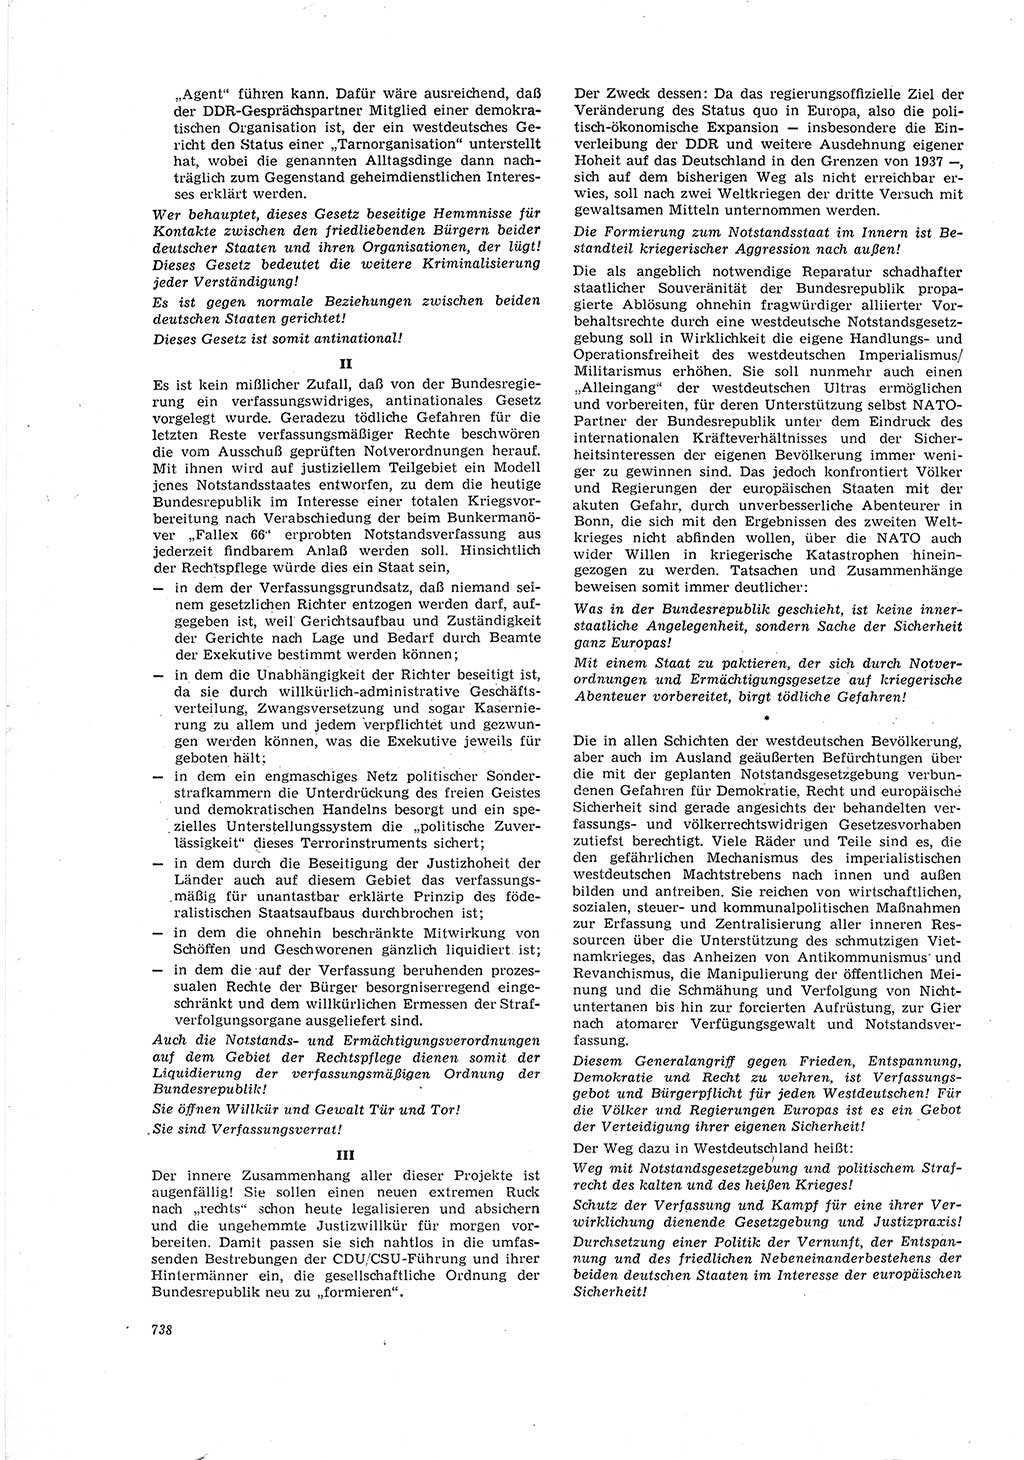 Neue Justiz (NJ), Zeitschrift für Recht und Rechtswissenschaft [Deutsche Demokratische Republik (DDR)], 20. Jahrgang 1966, Seite 738 (NJ DDR 1966, S. 738)